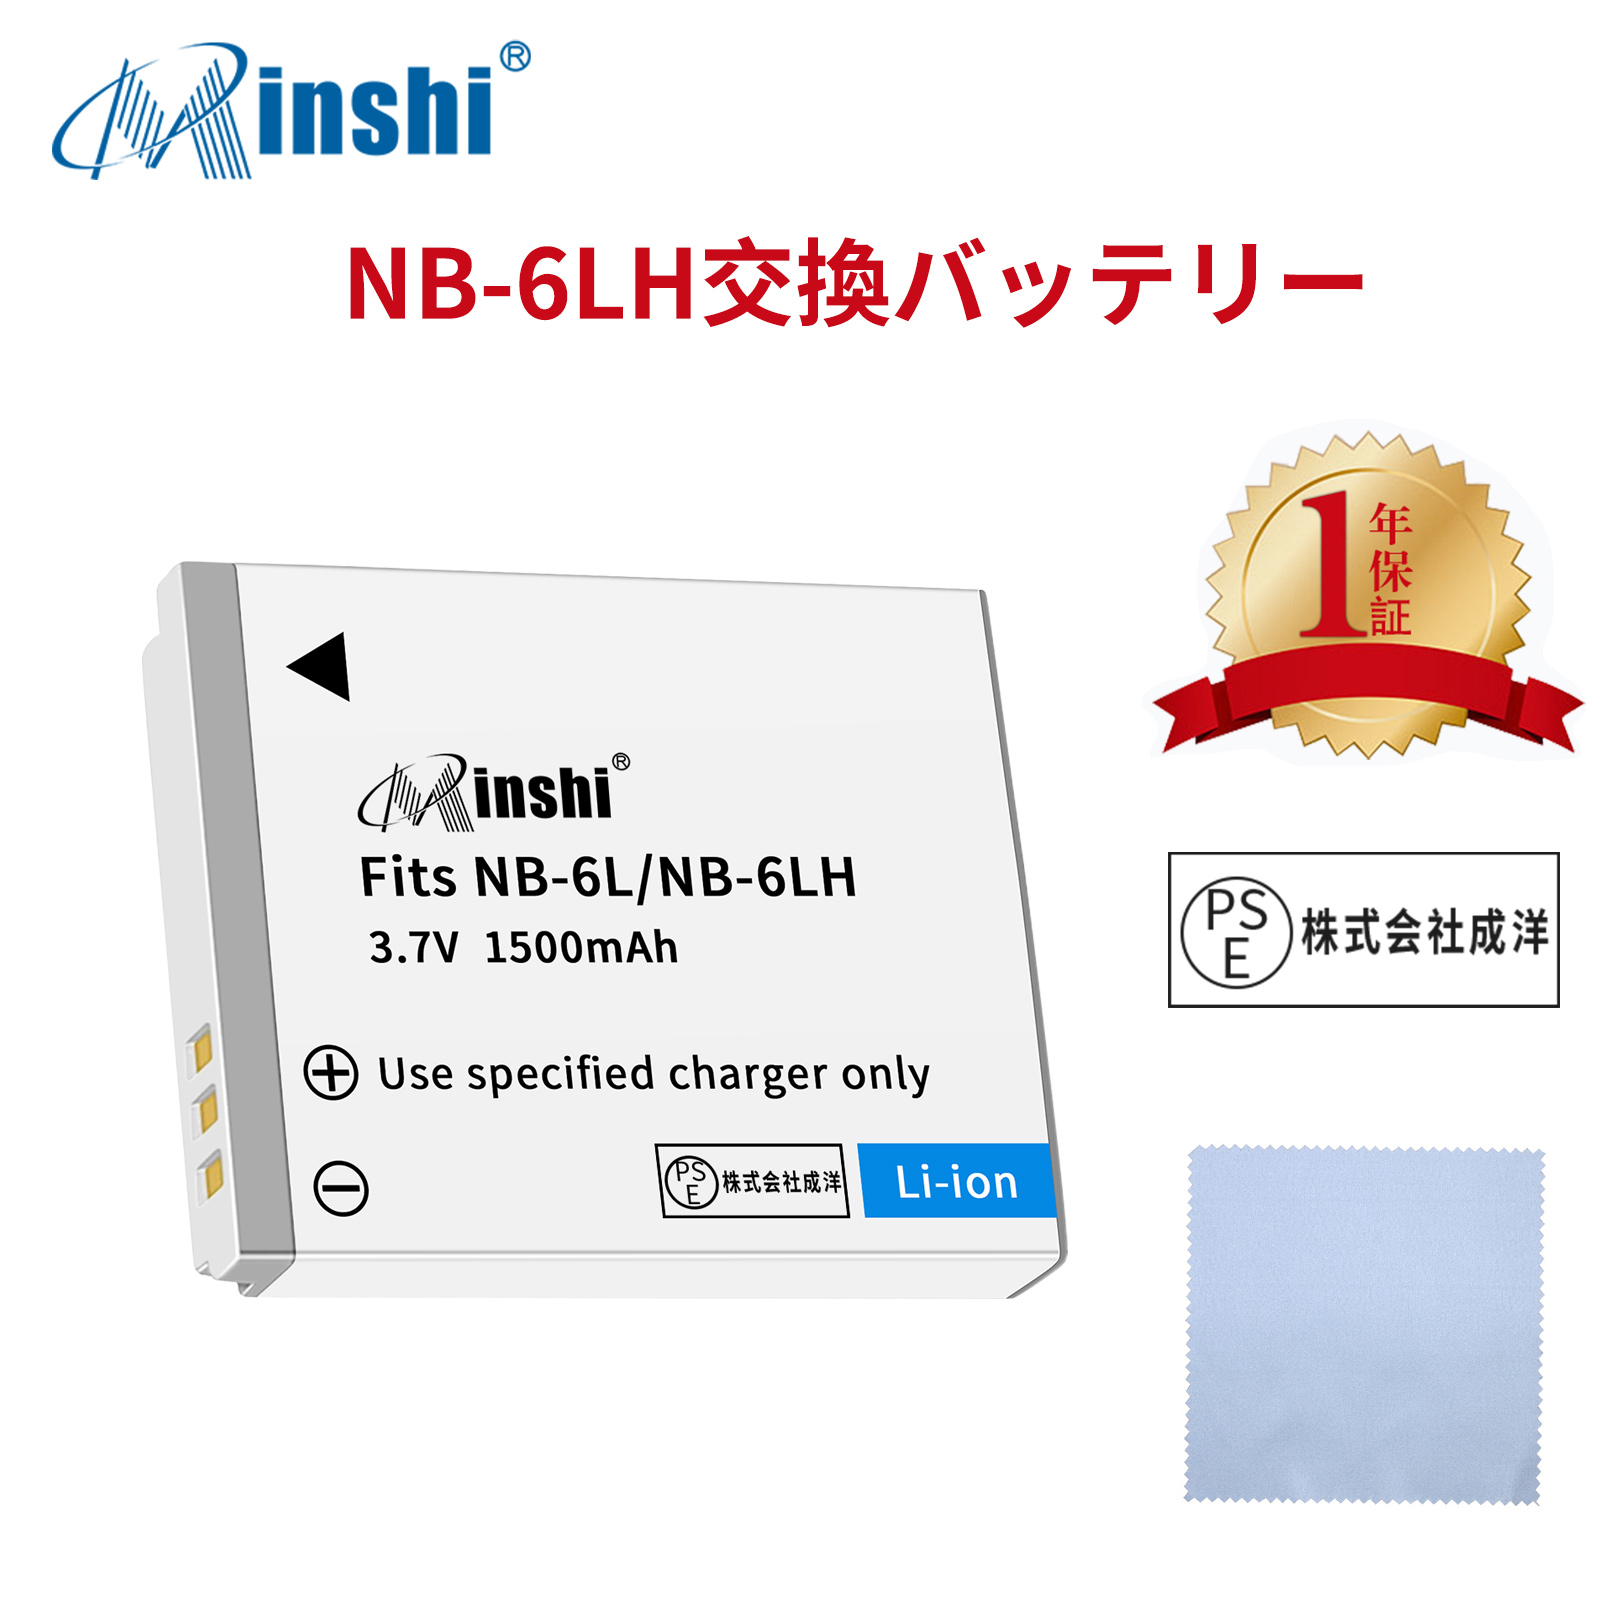 【清潔布ー付】minshi Canon NB-6L IXUS 200 IS NB-6L【1500mAh 3.7V】PSE認定済 高品質 NB-6LH 交換用バッテリー